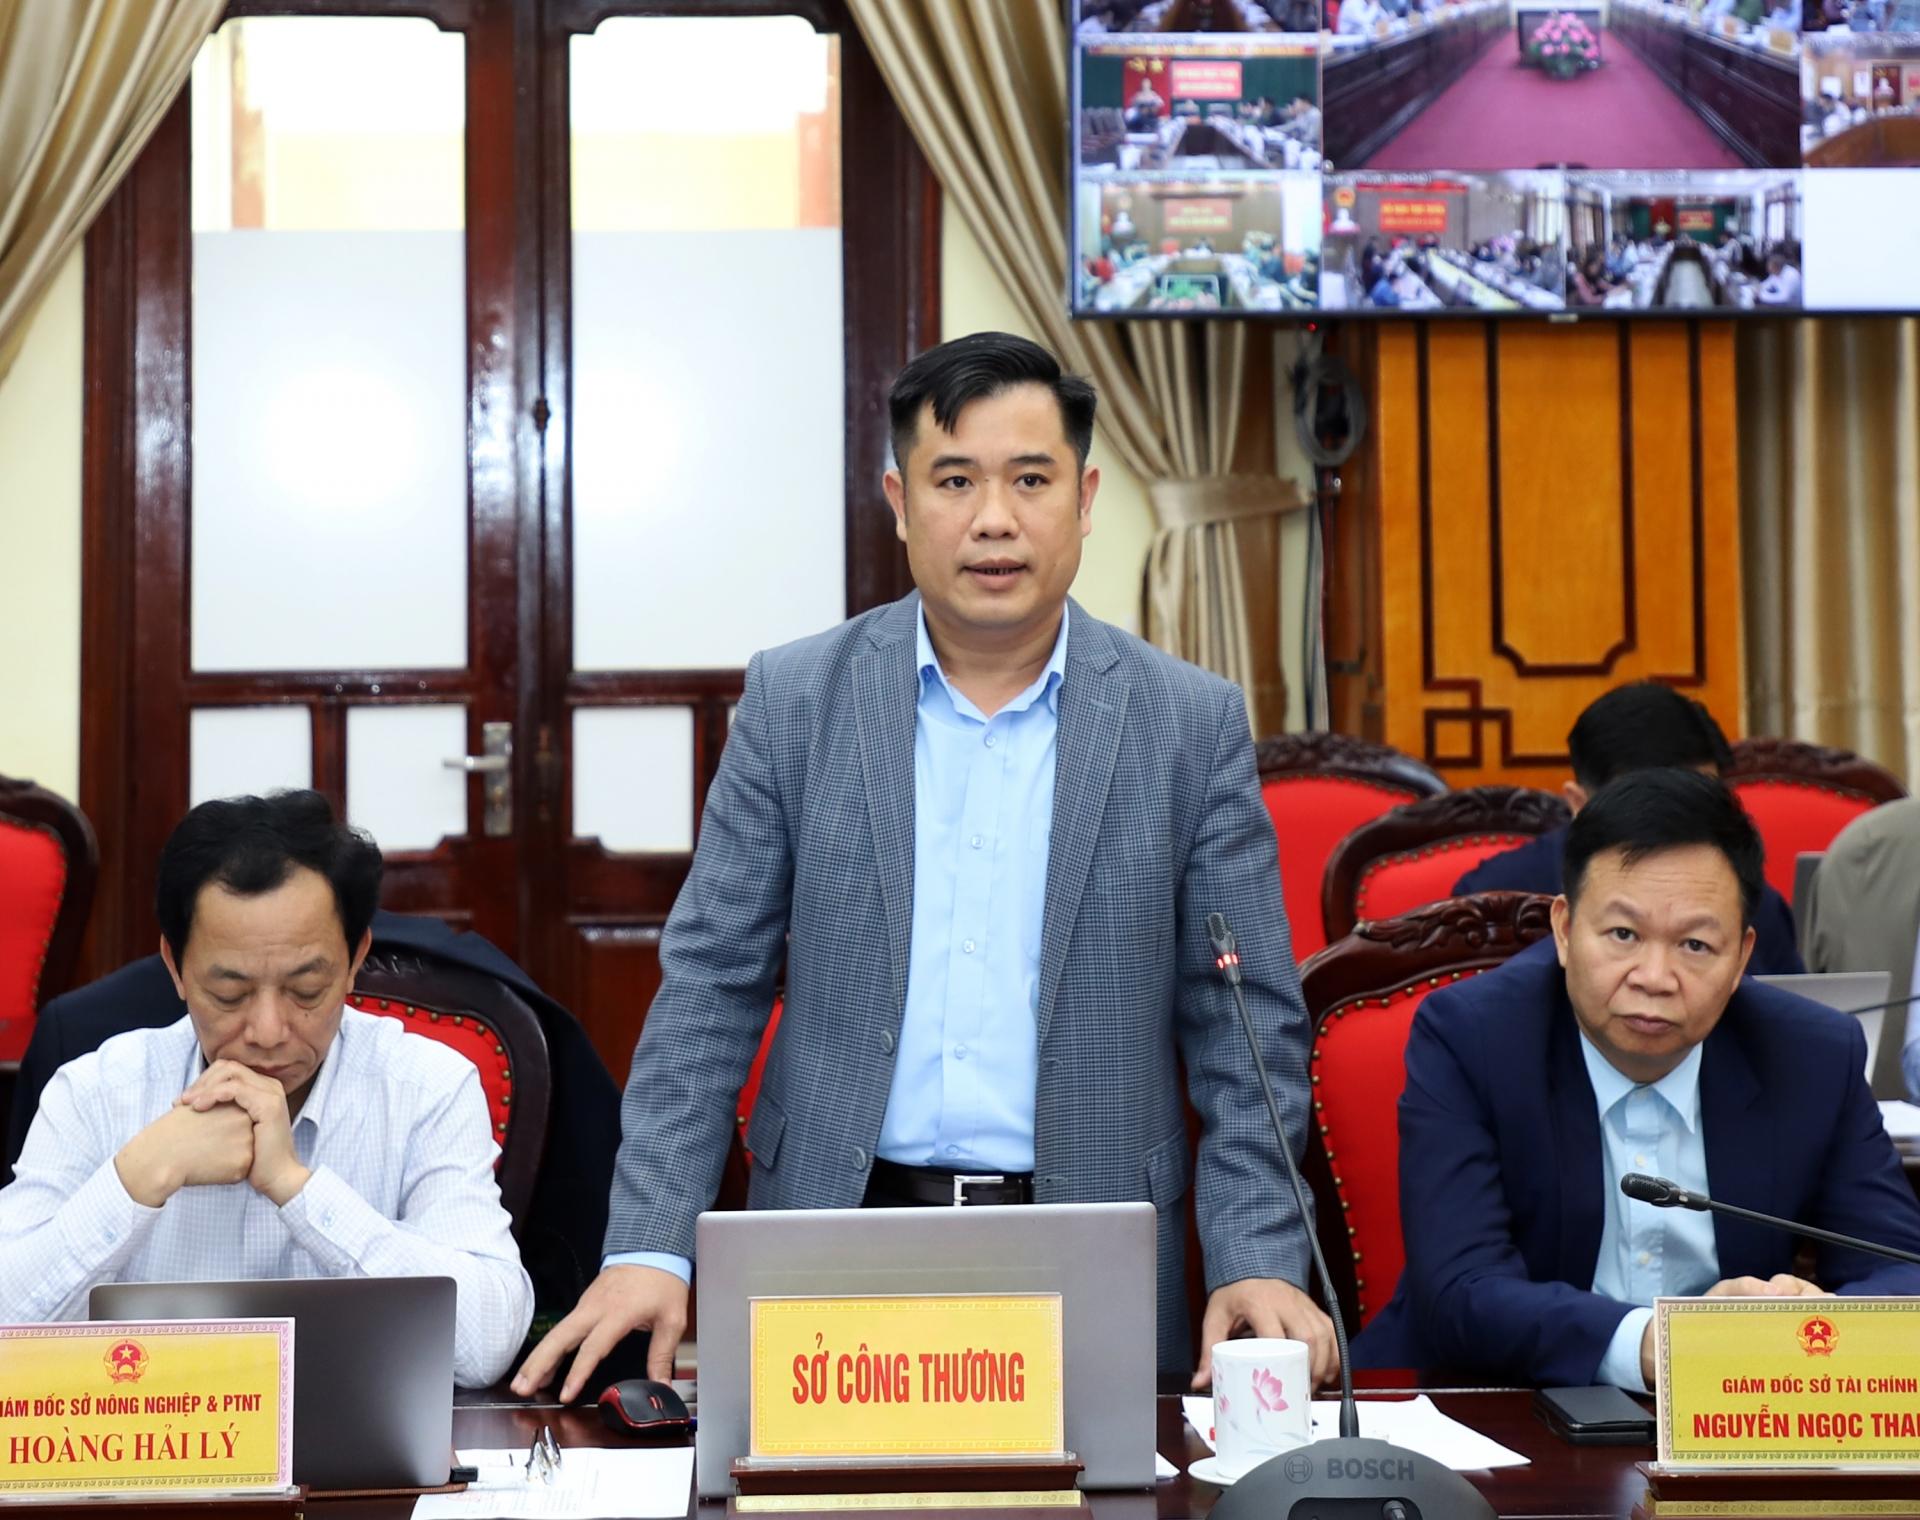 Phó Giám đốc Sở Công thương Trần Việt Thế đề nghị các địa phương tích cực phối hợp, trao đổi với phía đối đẳng để nối lại các hoạt động giao thương, xuất nhập khẩu hàng hóa qua các cửa khẩu, chợ biên giới.